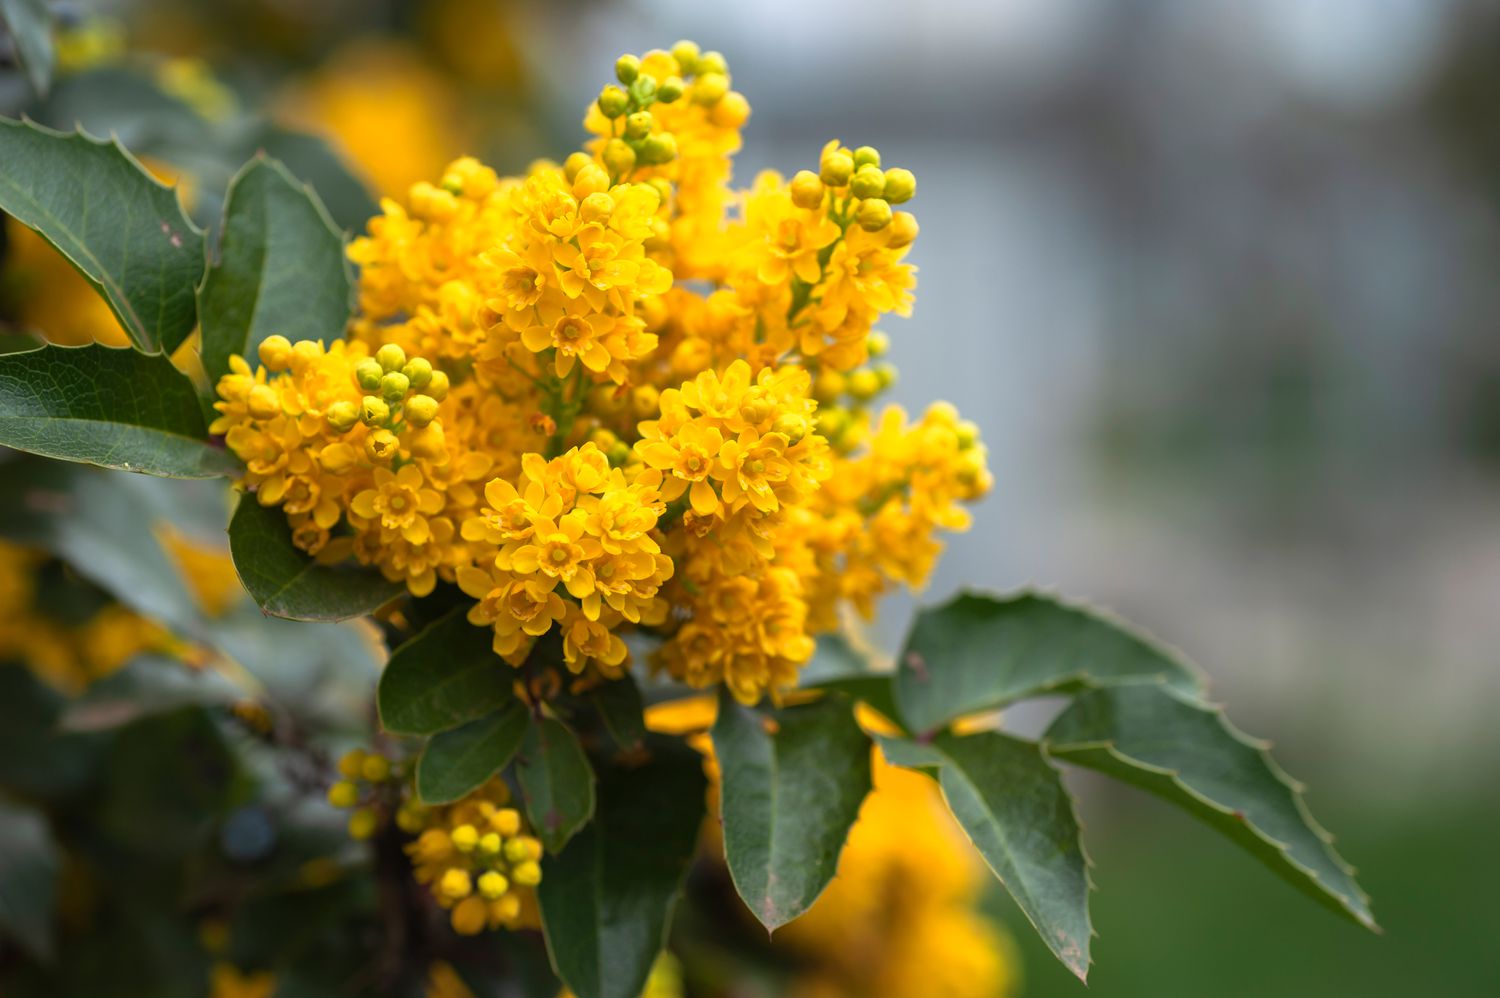 Oregon-Traubenstrauchzweig mit gelben Blüten und Knospen in Nahaufnahme